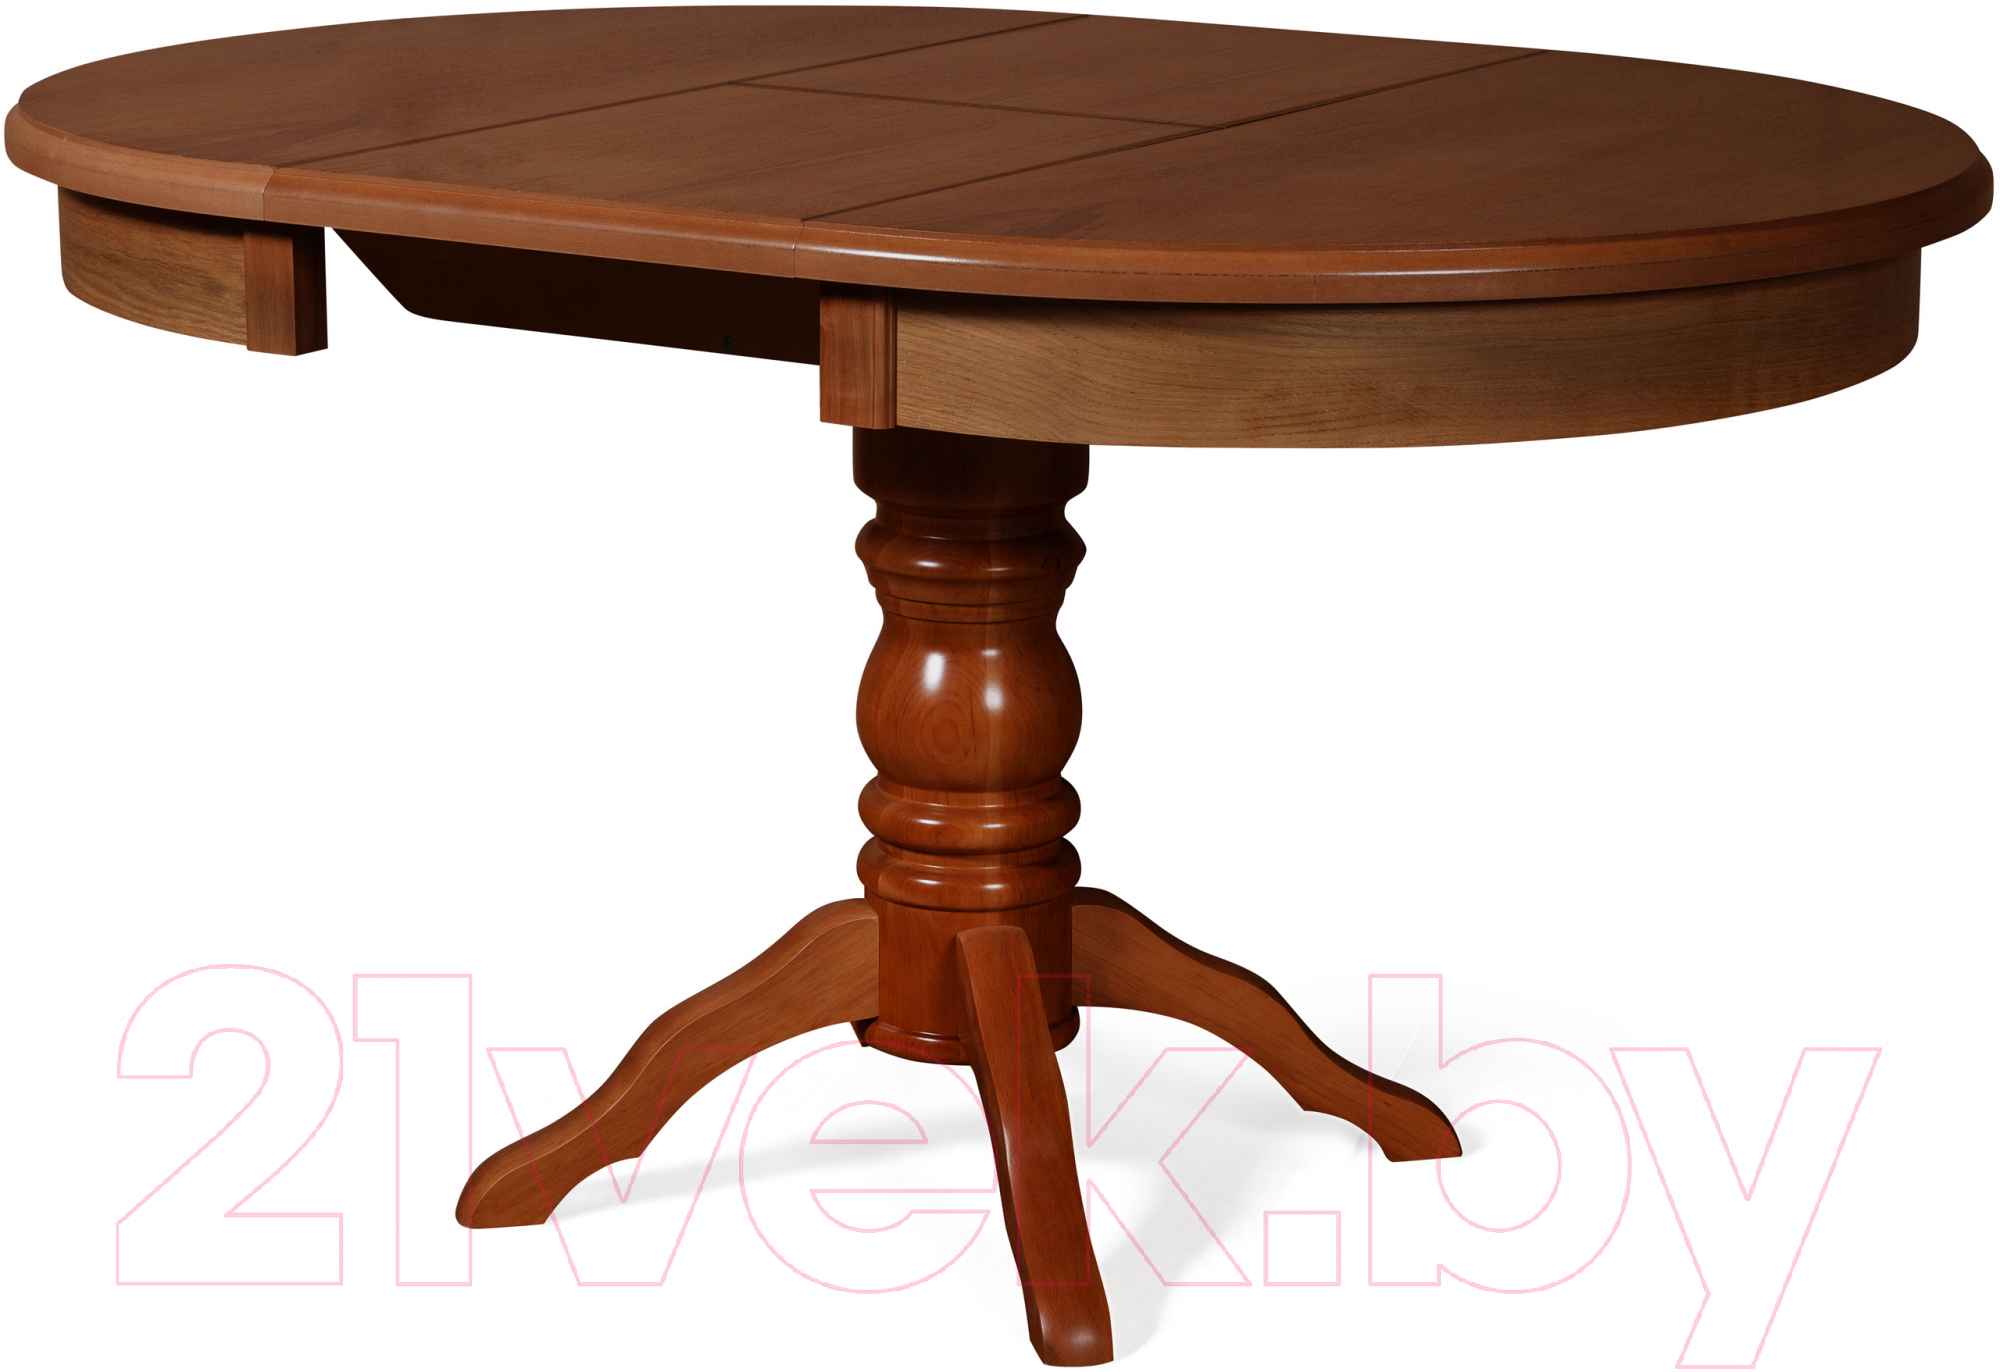 Обеденный стол Мебель-Класс Прометей Палисандр